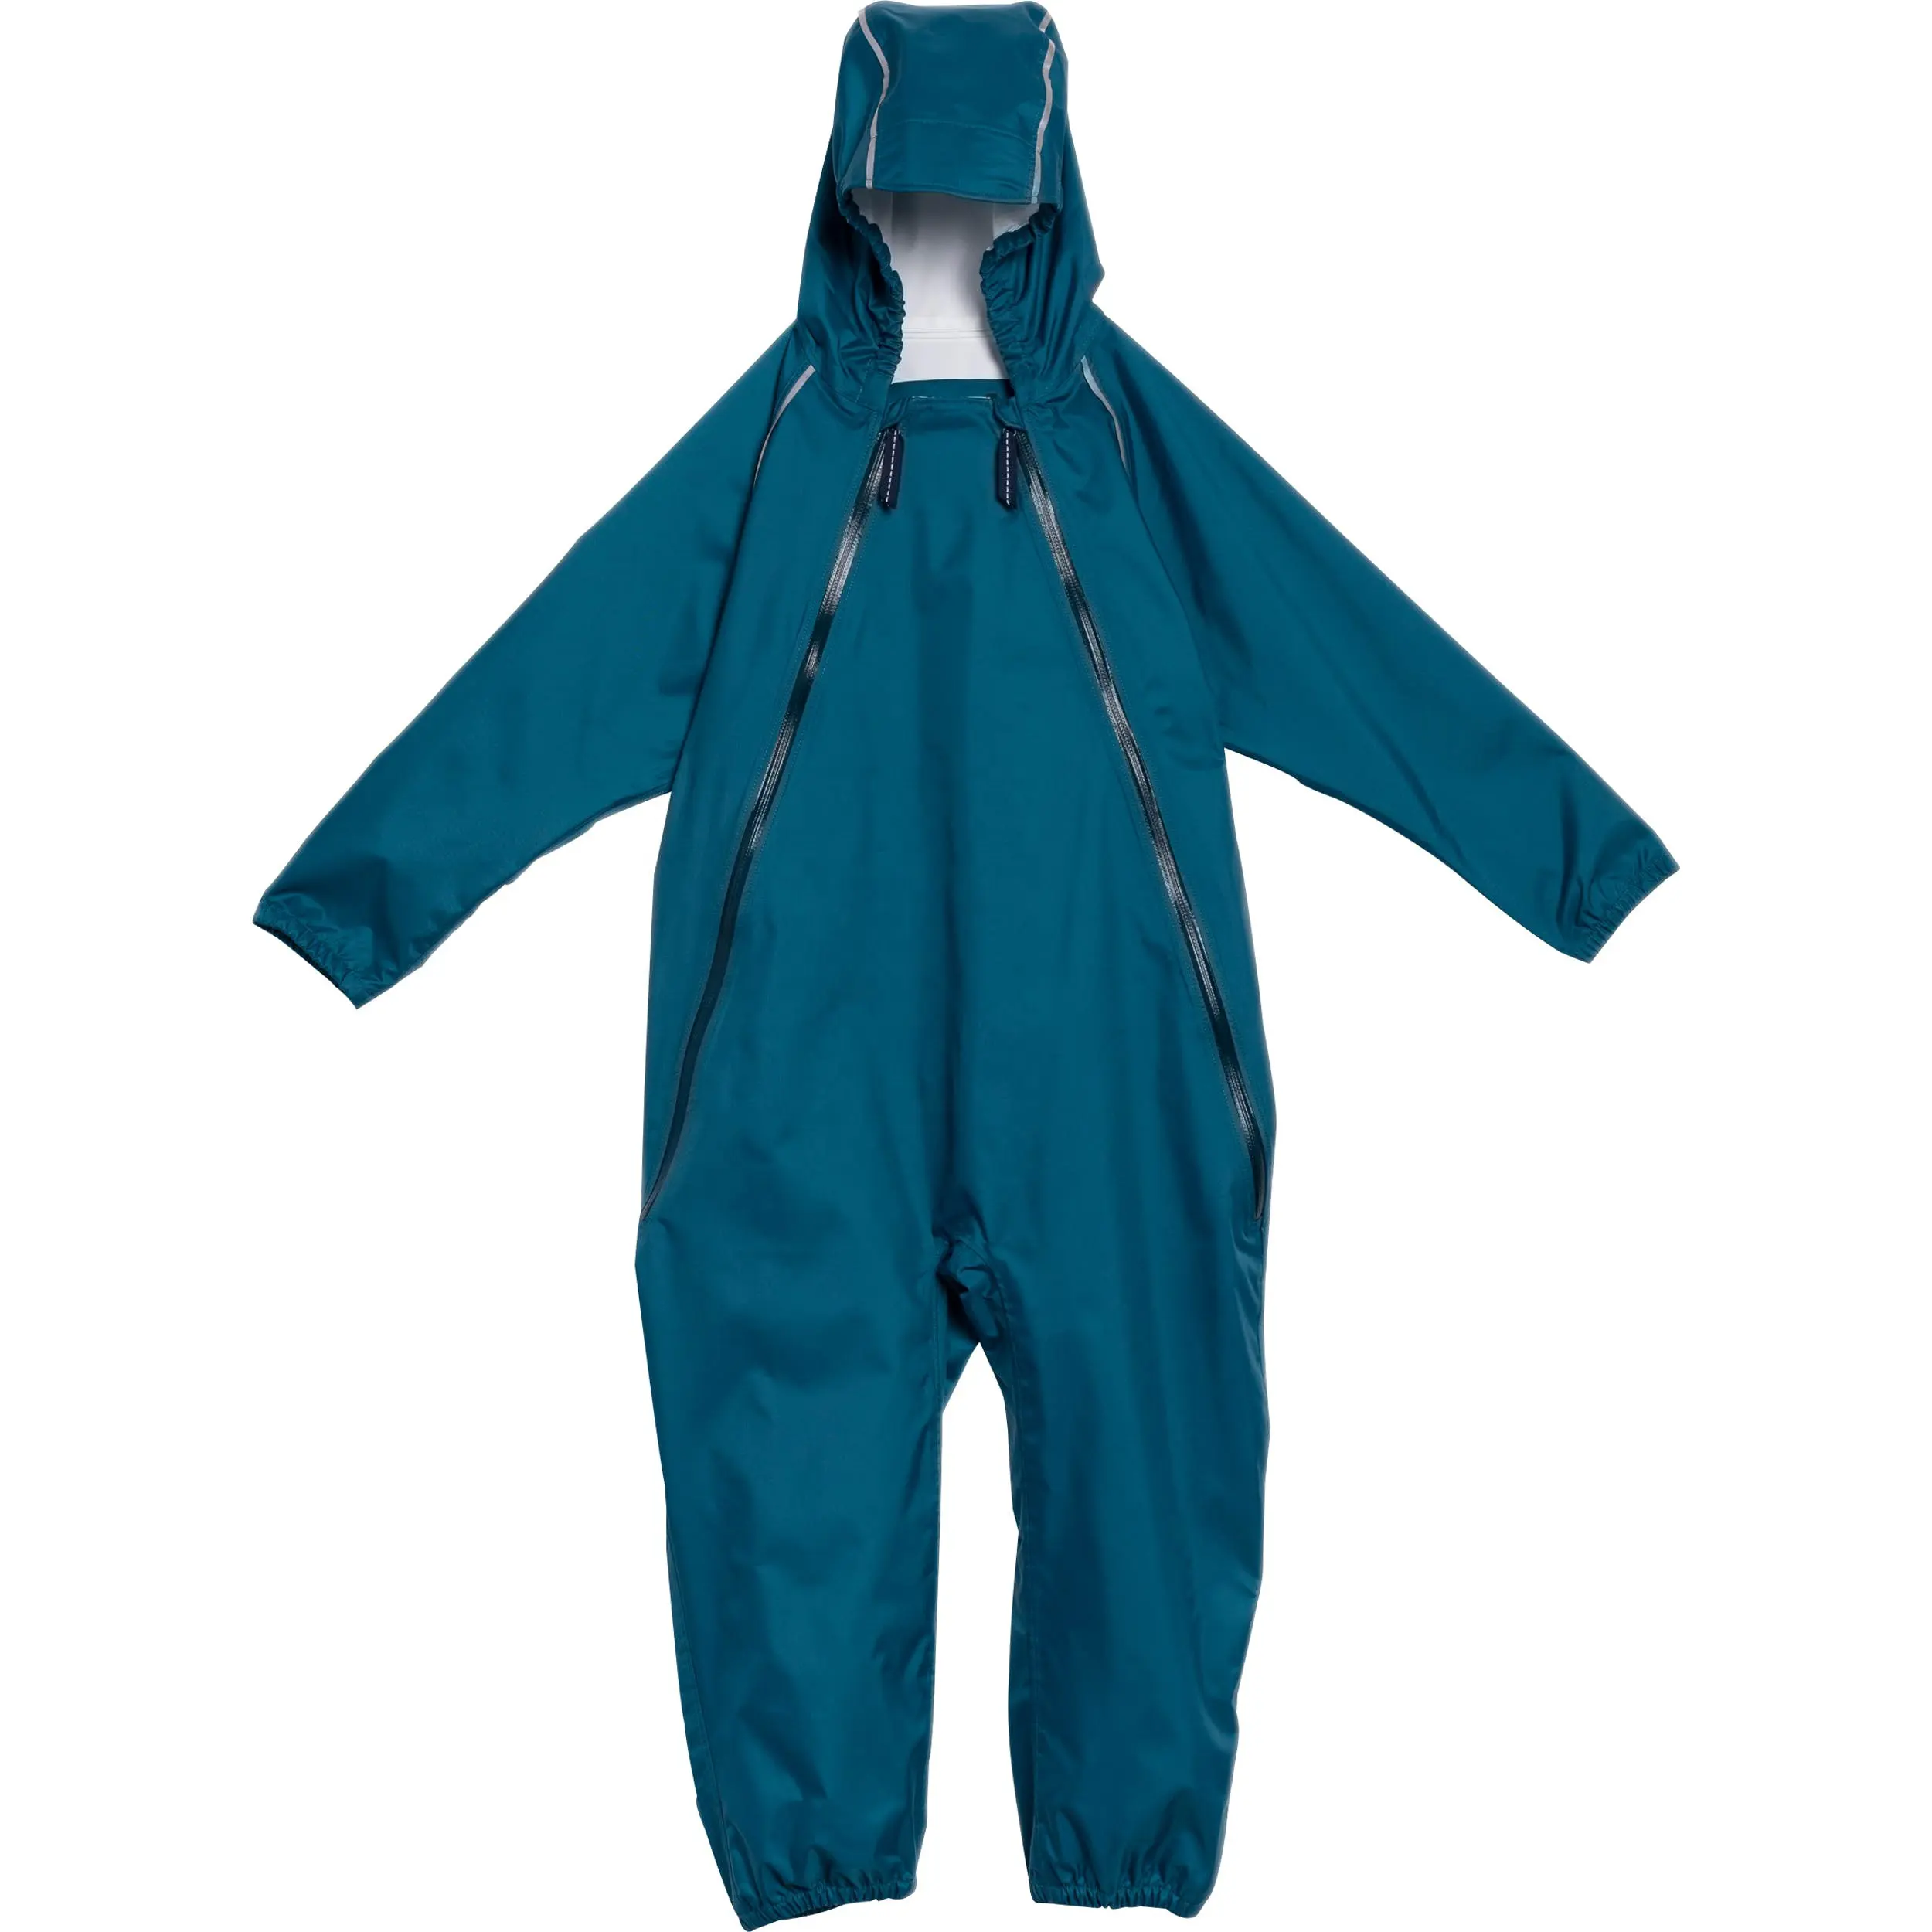 बारिश निविड़ अंधकार कोट बच्चे कस्टम प्रिंट बच्चों बच्चे बच्चों बच्चा बच्चों rainsuit के लिए पहनने बारिश कोट raincoats